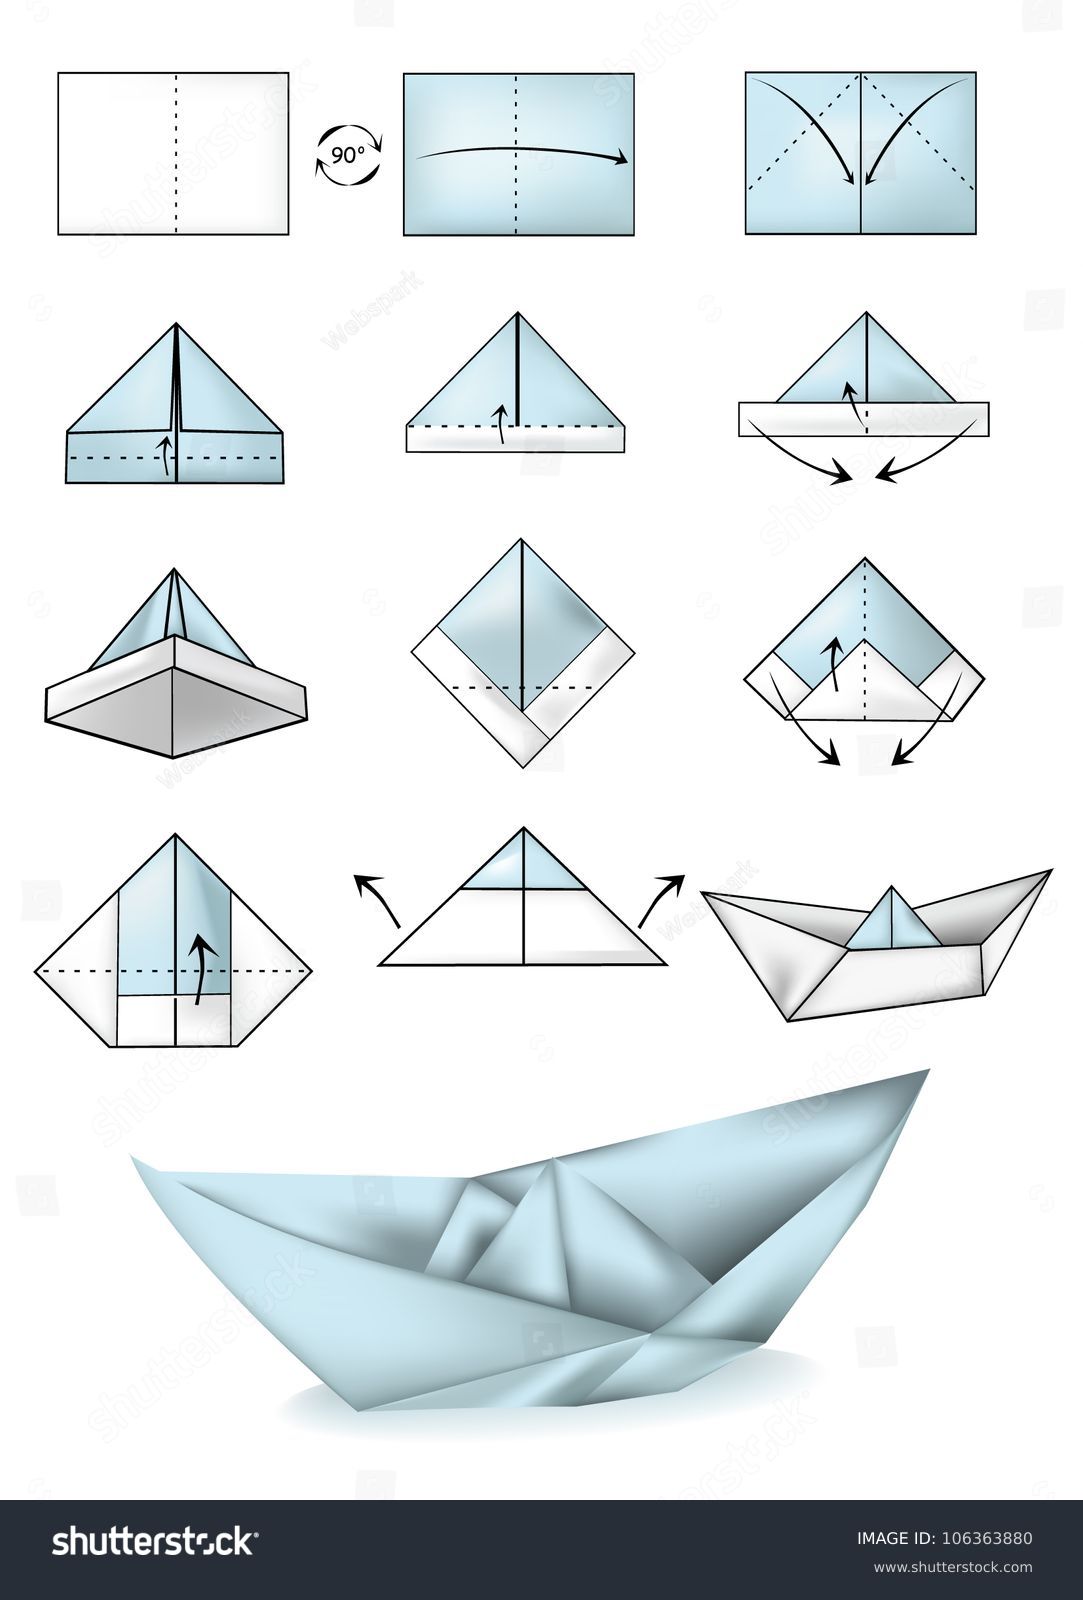 Paper Boat Instructions Illustration Tutorial Stock Vector 